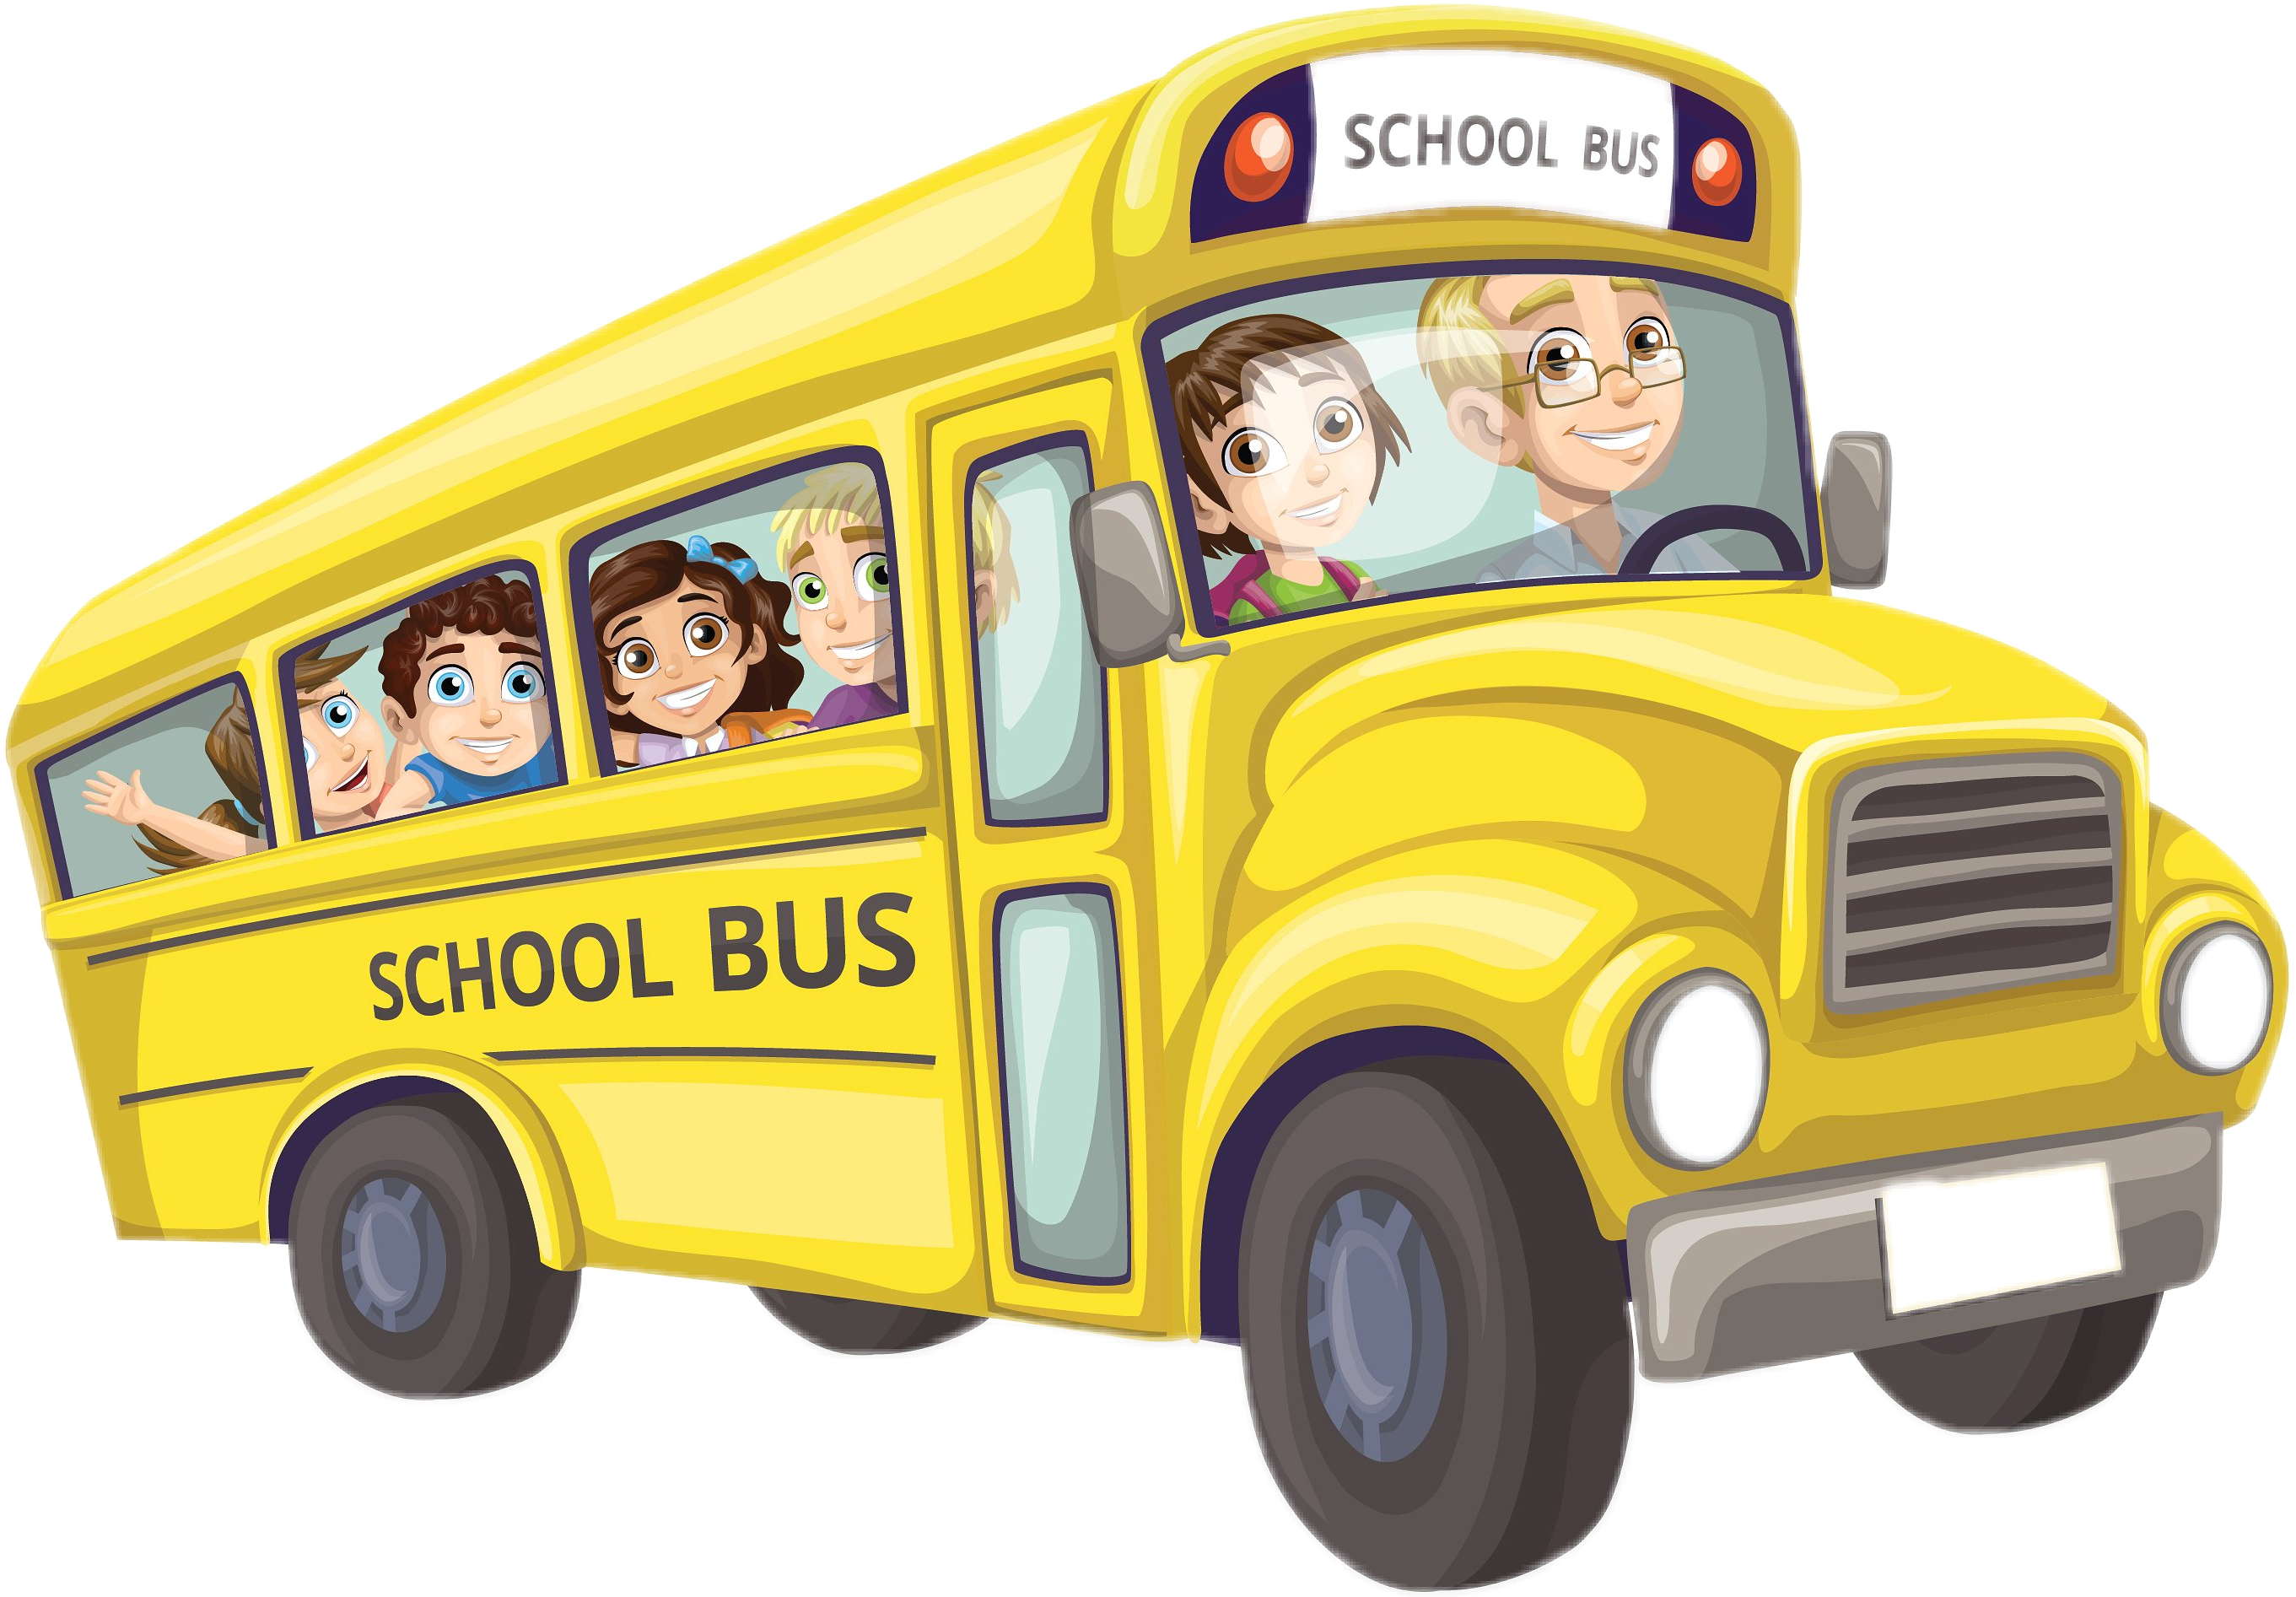 is about school bus yellow children trip freetoedit scschoolbus schoolbus #...